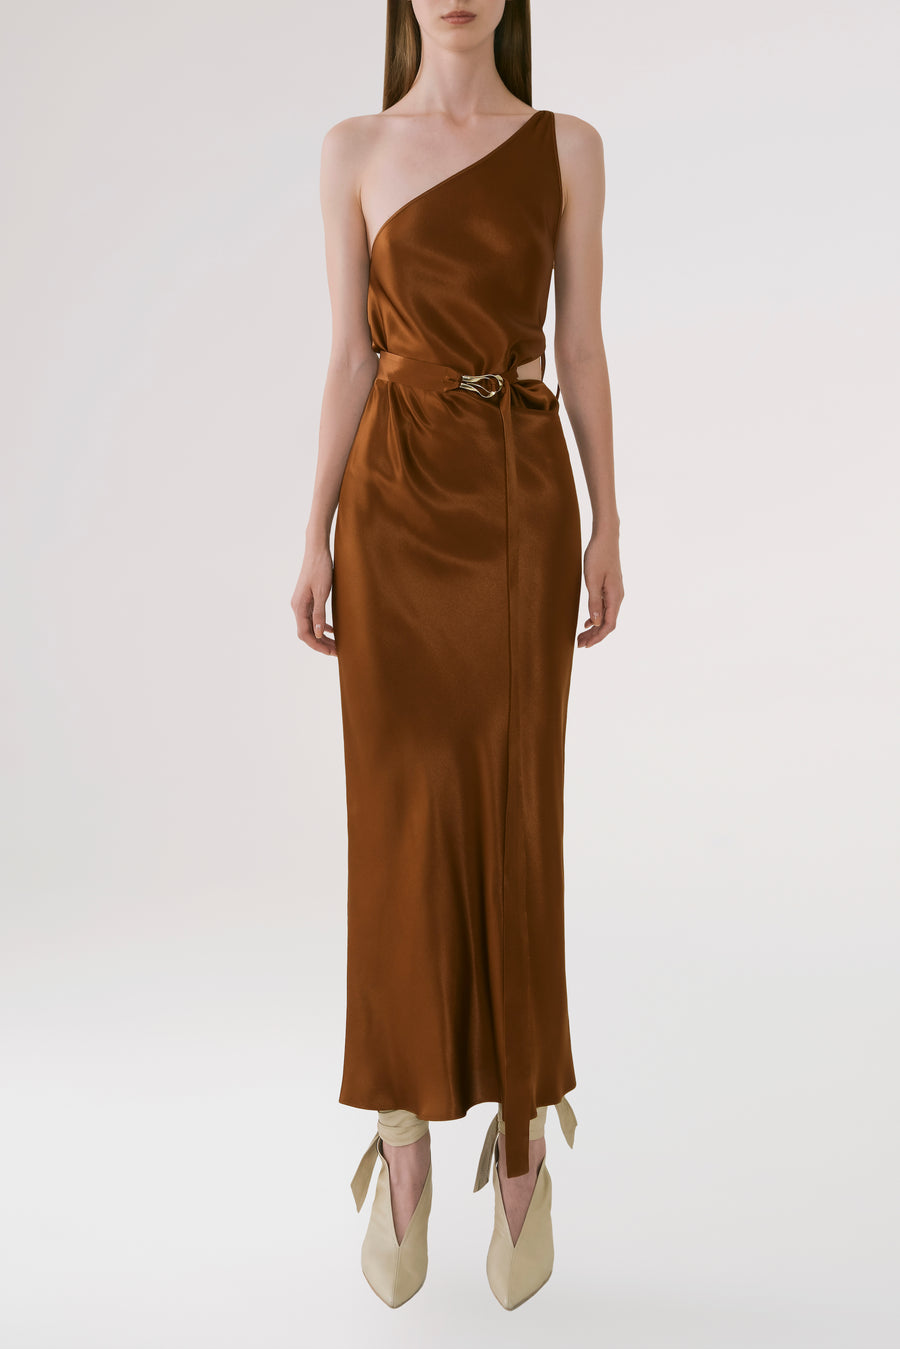 One Shoulder Satin Brown Dress